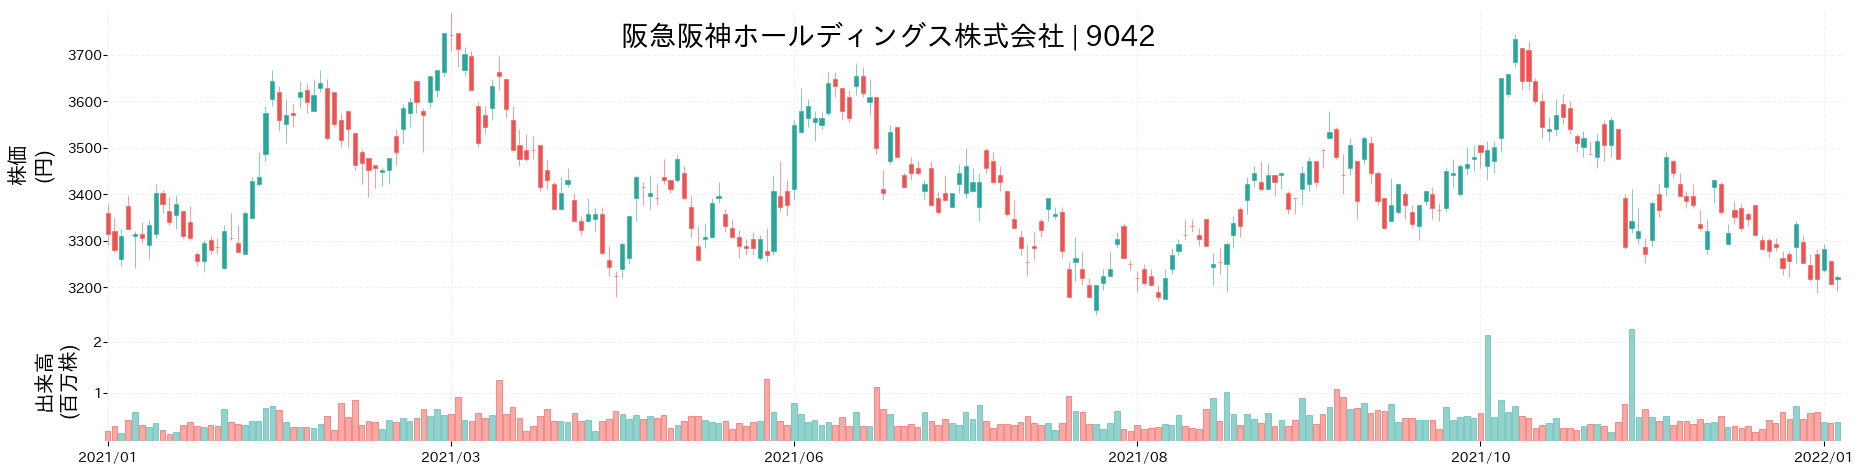 阪急阪神ホールディングスの株価推移(2021)